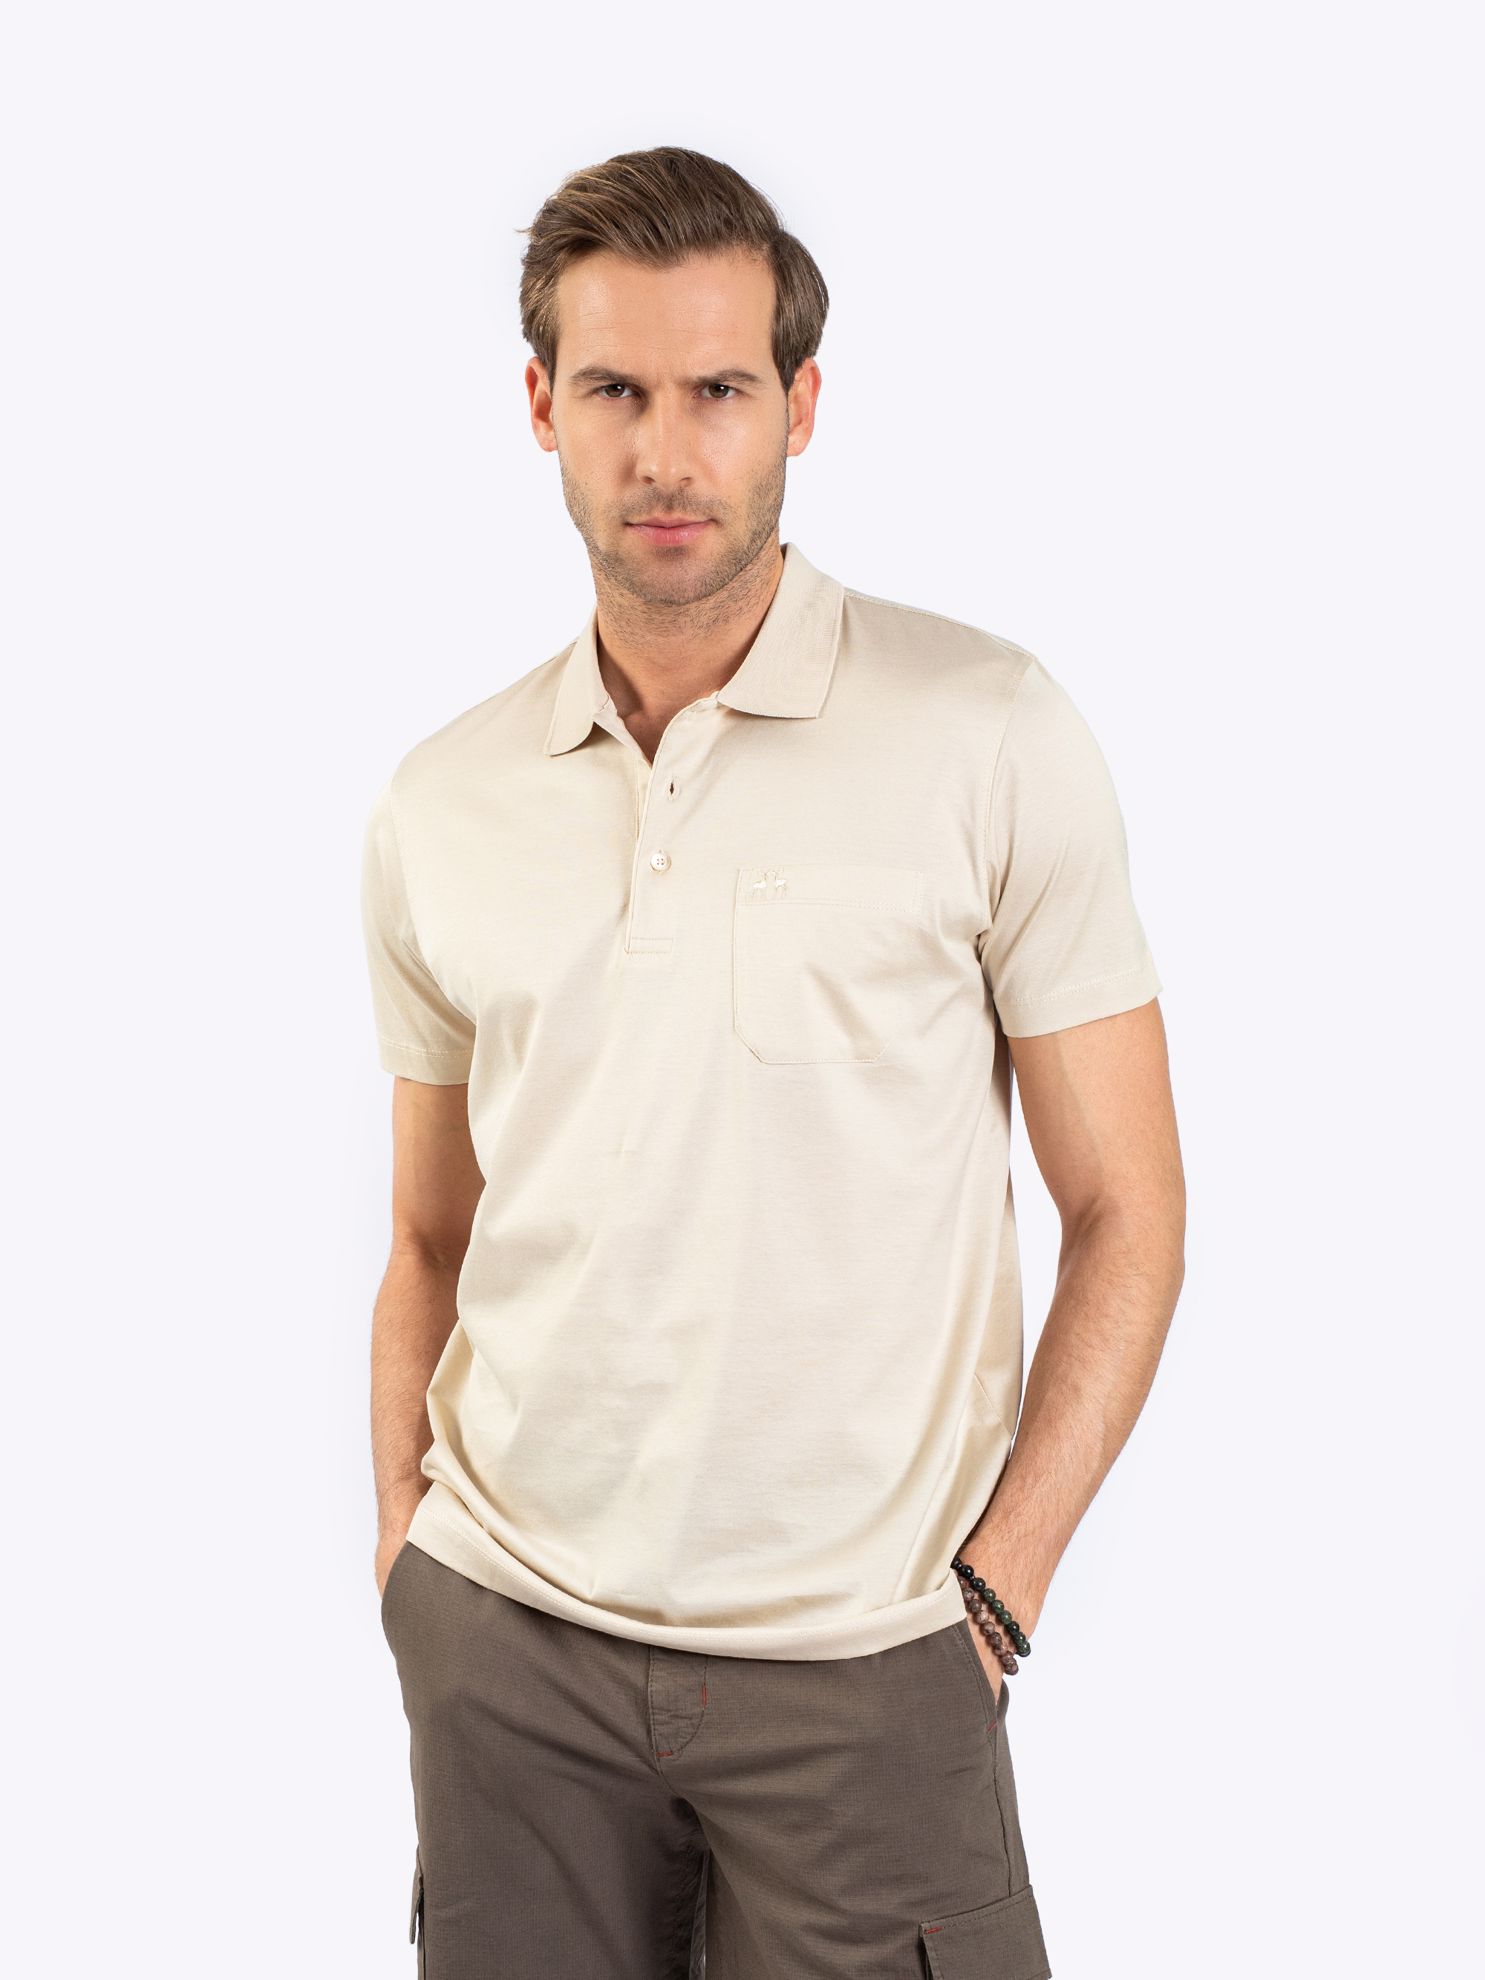 Karaca Erkek Büyük Beden Polo Yaka Tişört-Açık Bej. ürün görseli